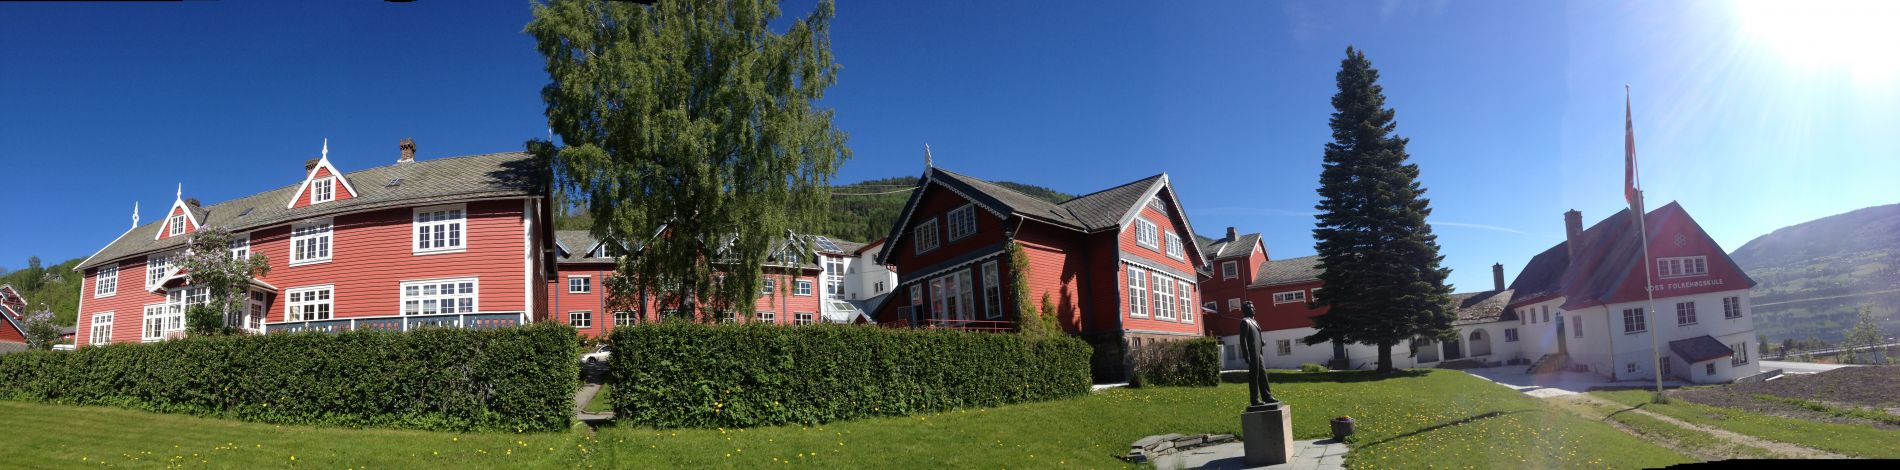 Voss folkehøgskole, panorama, sommer, stille 